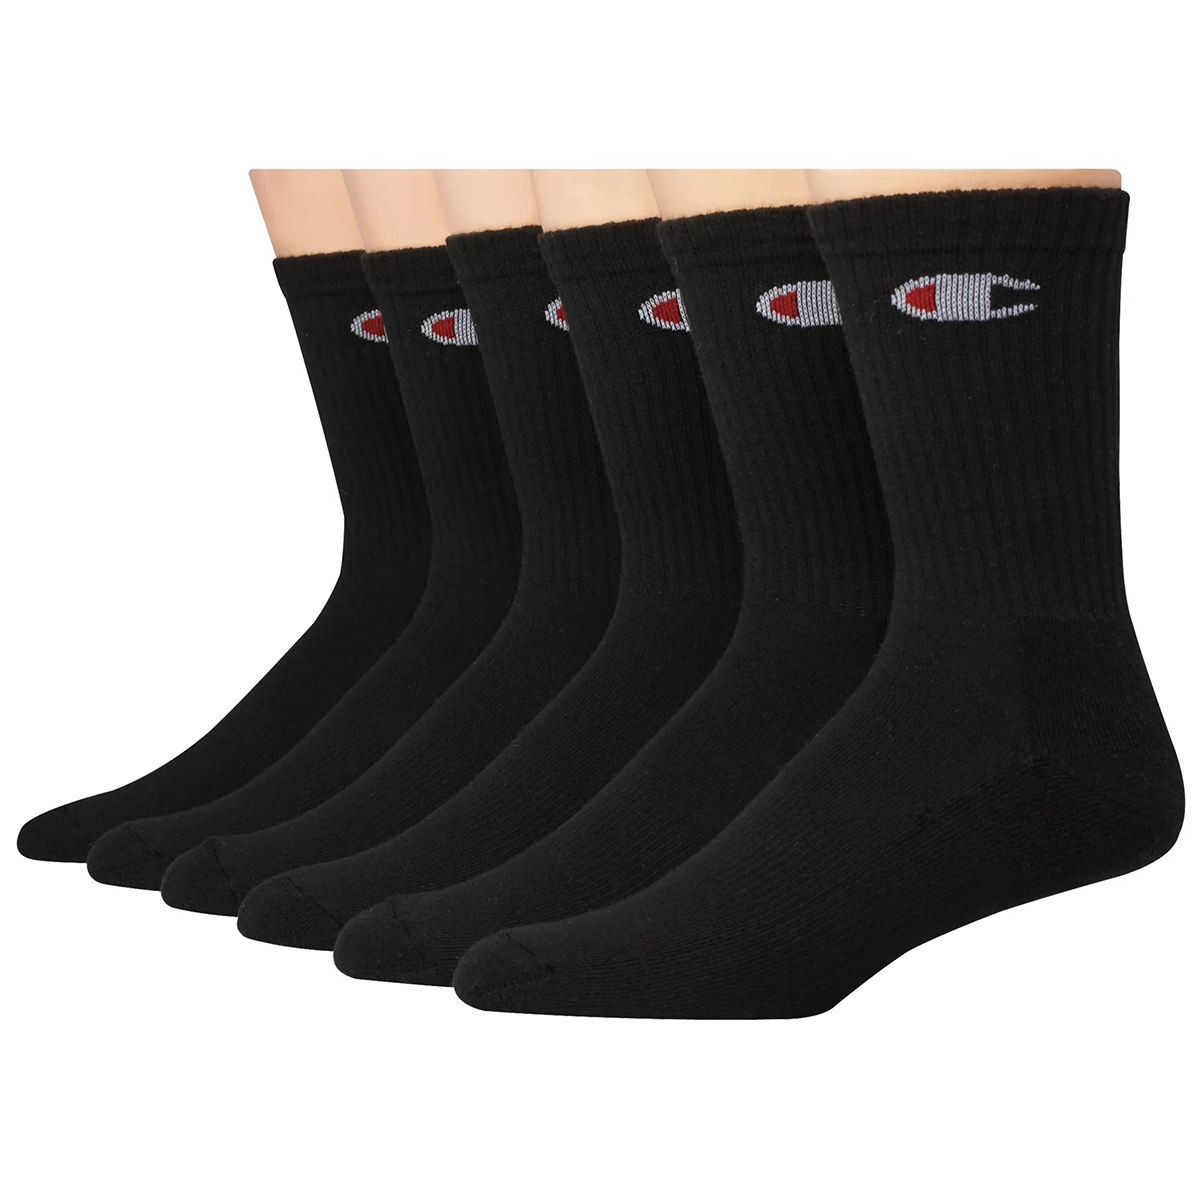 Champion Men's Crew Socks Extended Sizes, 6 Pack